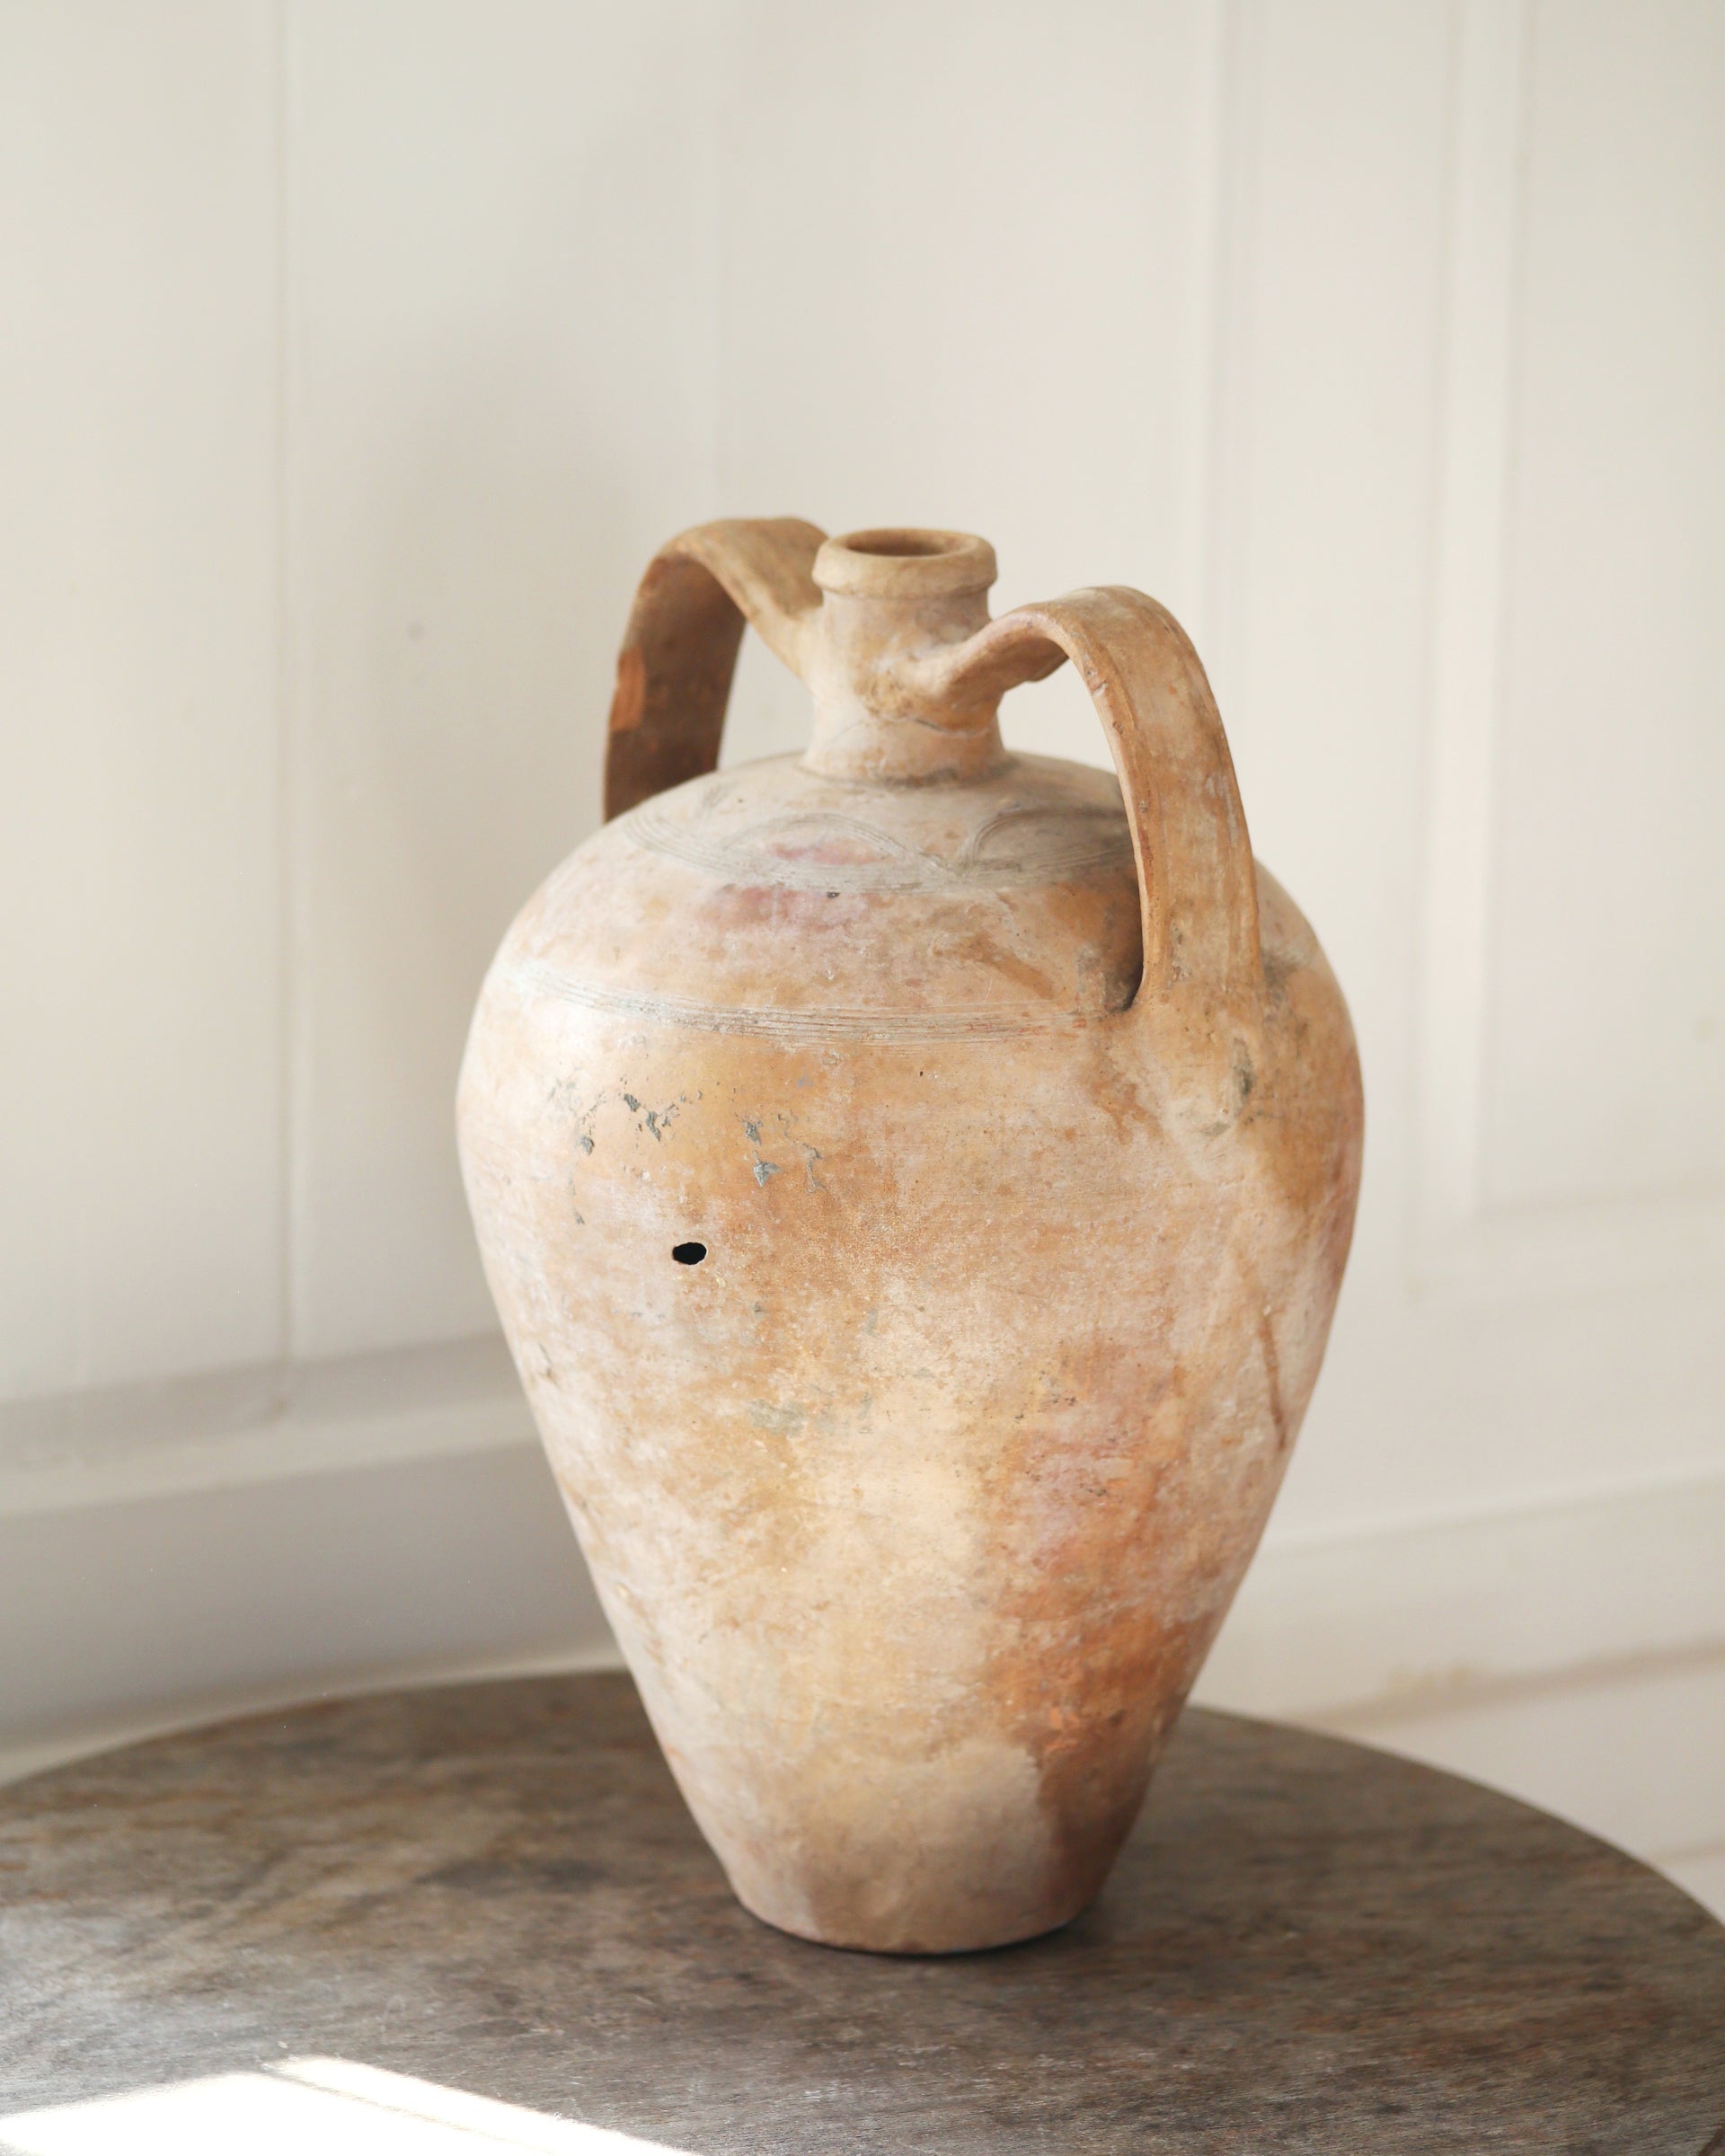 Original and authentic terracotta pot